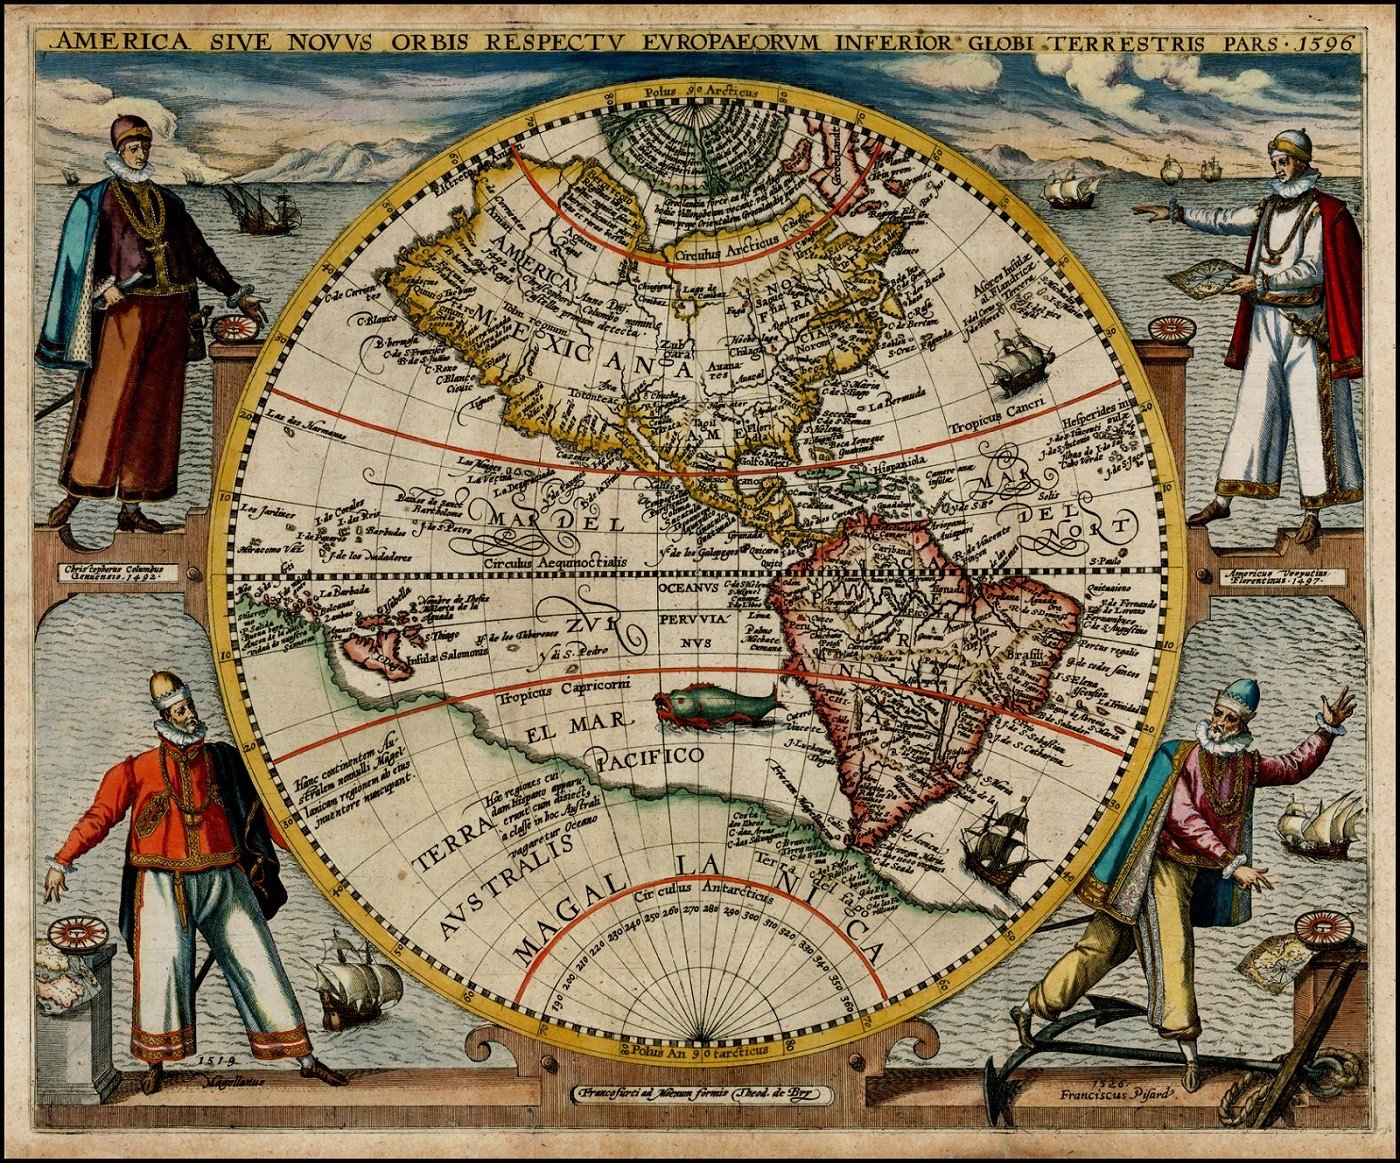 Előkerült egy 400 éves térkép a Földről, sokkoló adatok szerepelnek rajta 